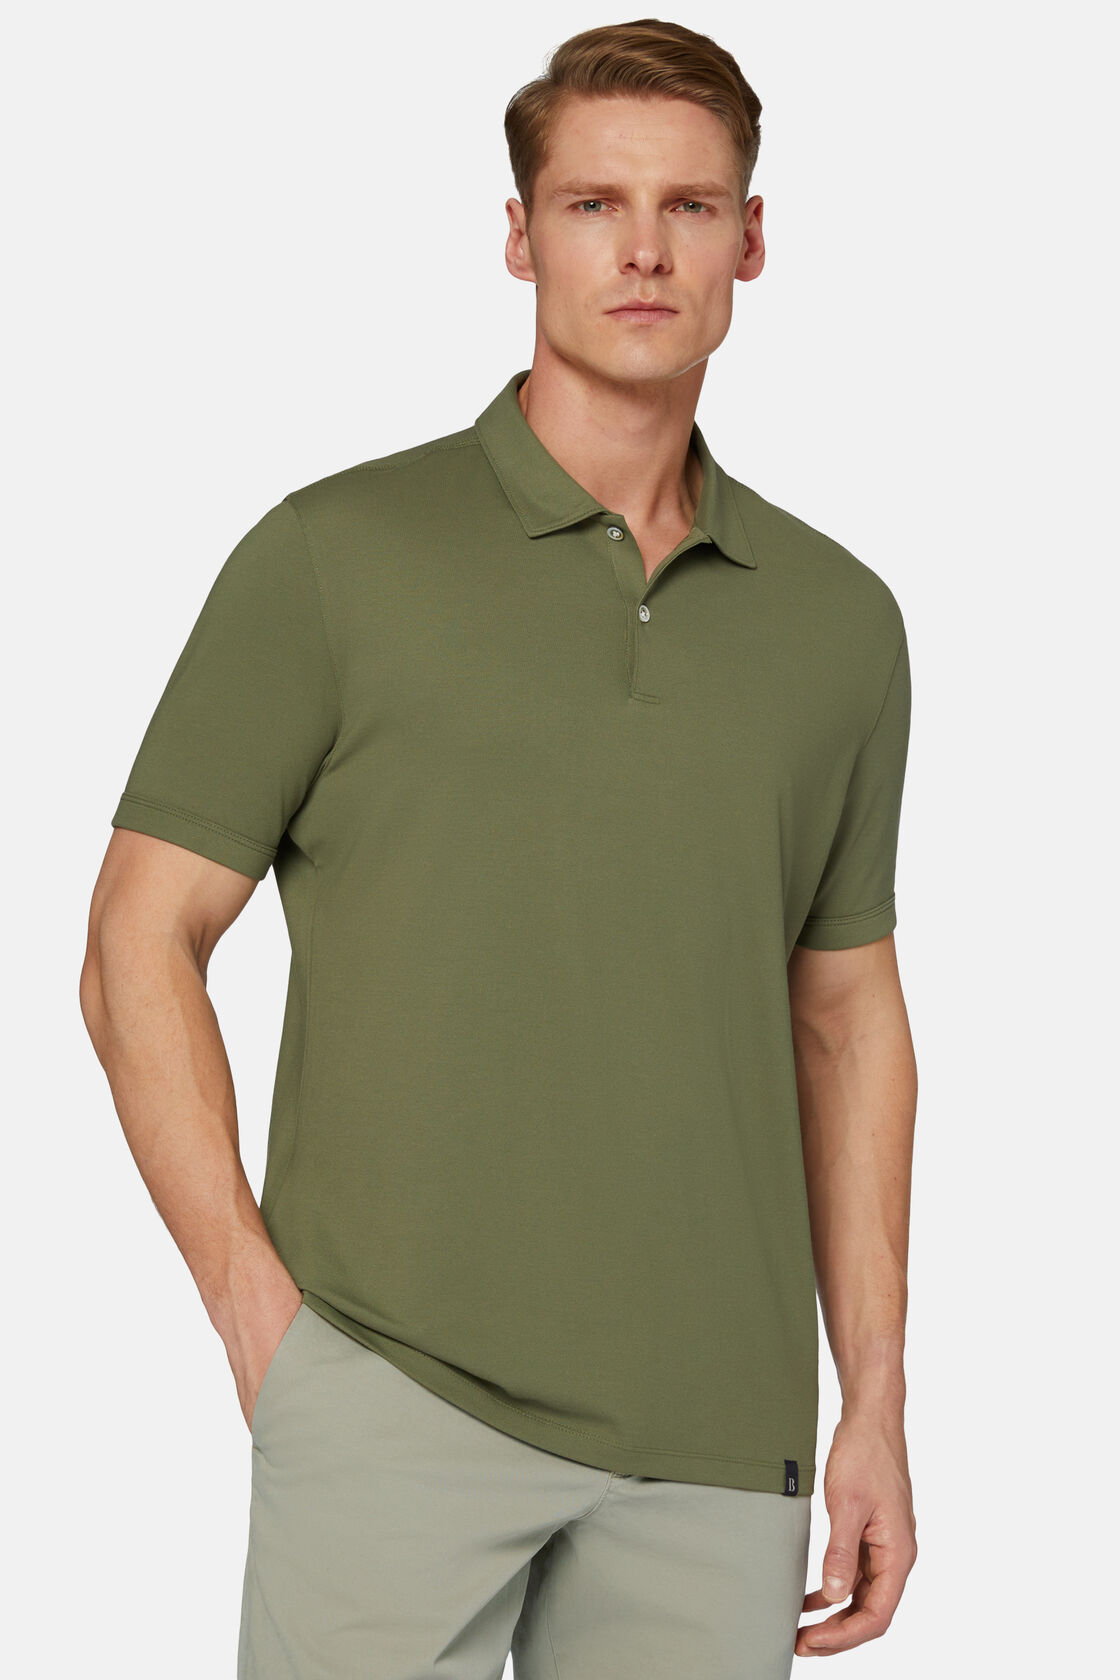 Tavaszi piké pólóing nagy teljesítményű anyagból, Military Green, hi-res